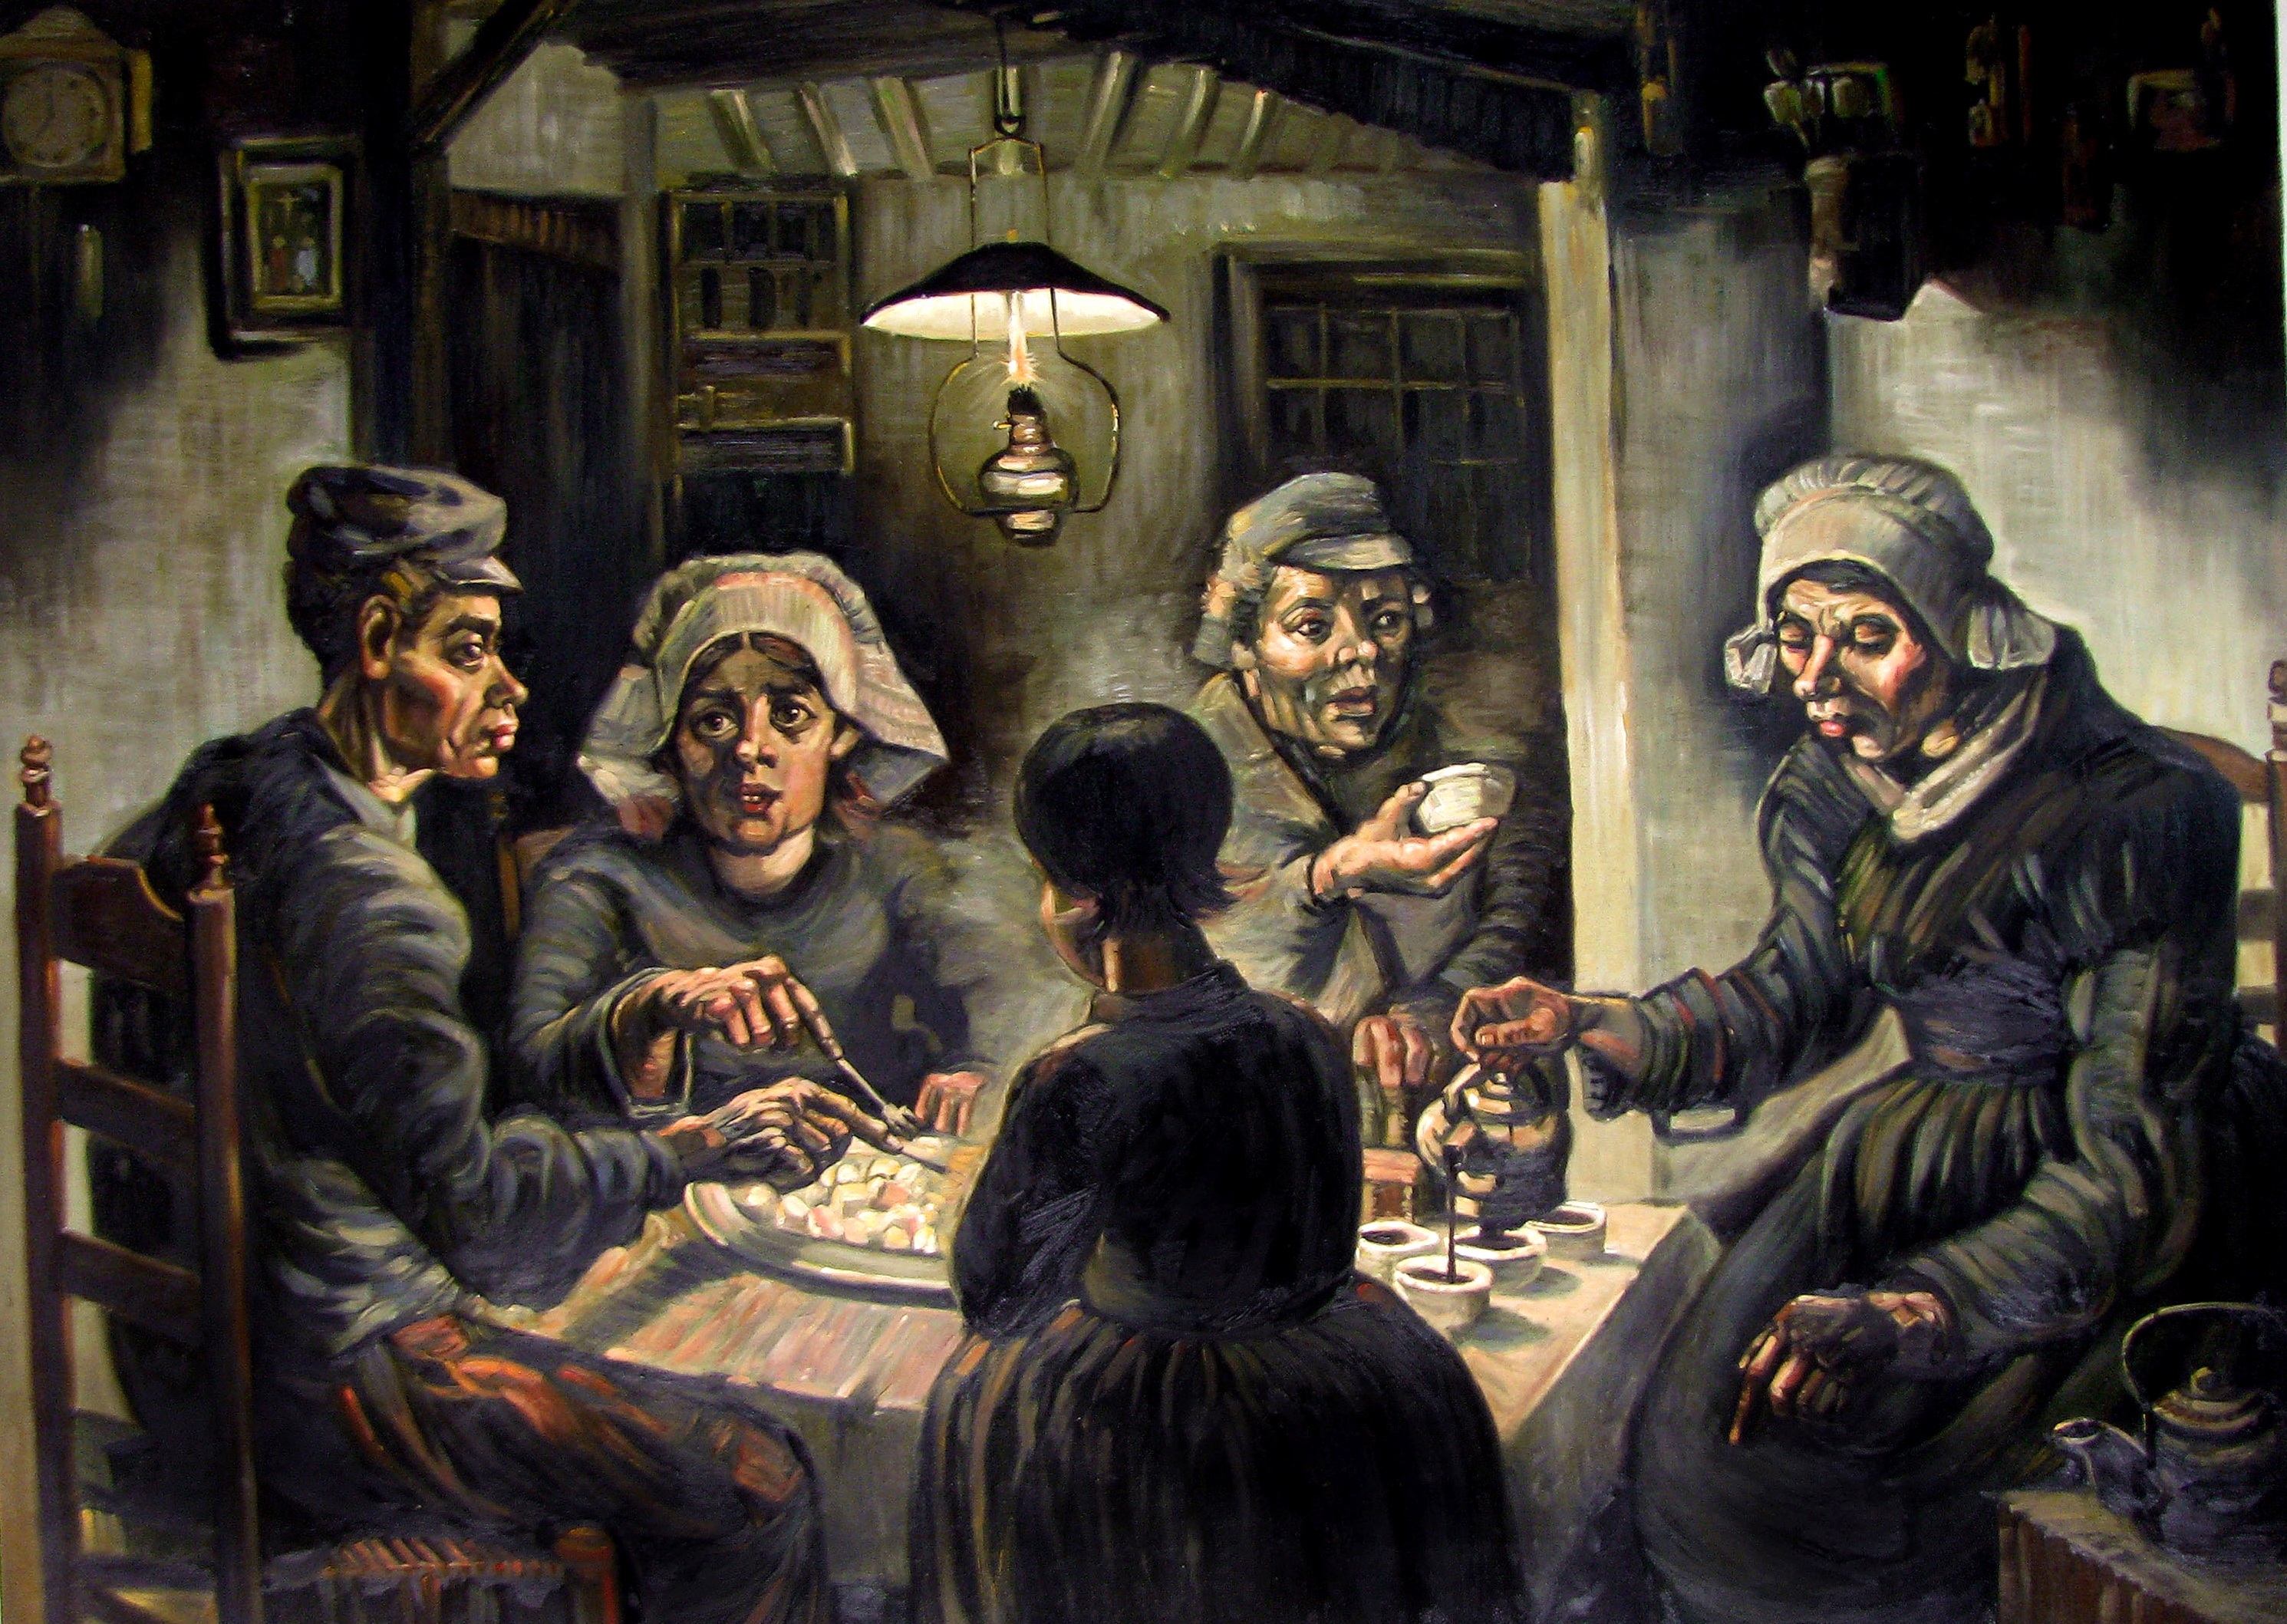 Van Gogh, Patates Yiyenler tablosunda, topraği işledikleri elleriyle kendi yetiştirdiği patatesi yiyen sıradan insanların dünyasına ortak eder.